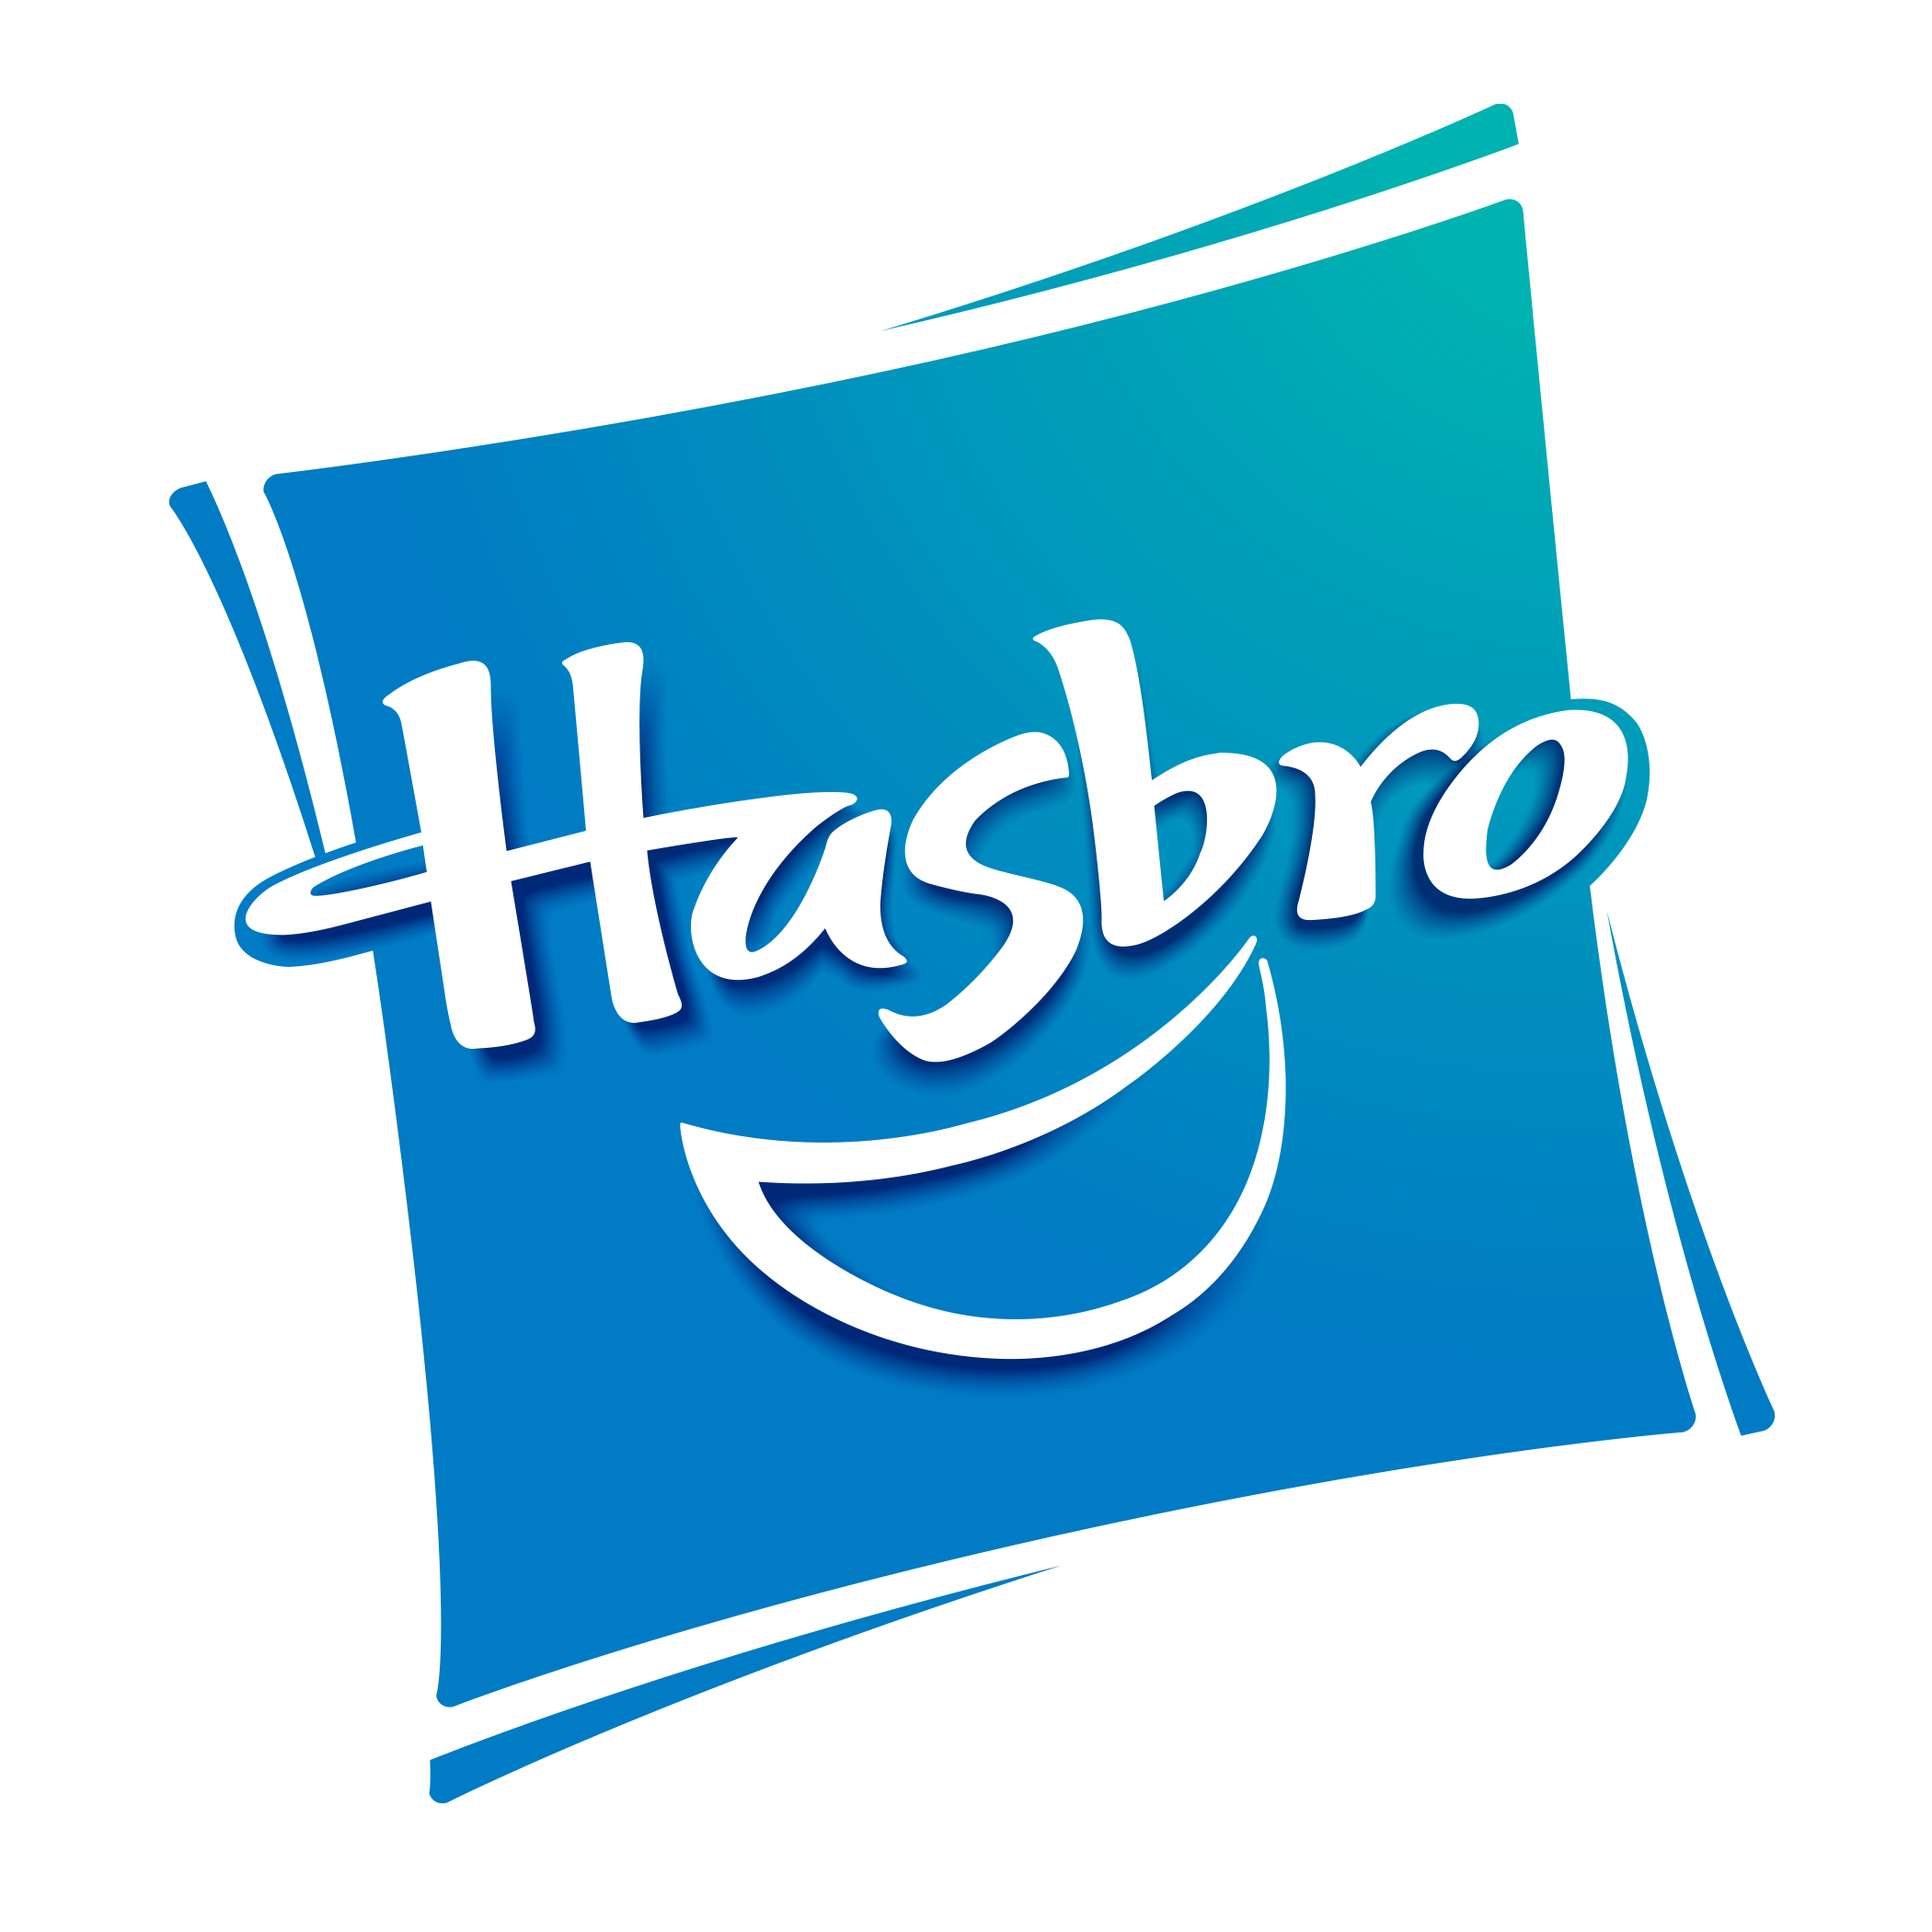 Hasbro gaming logo